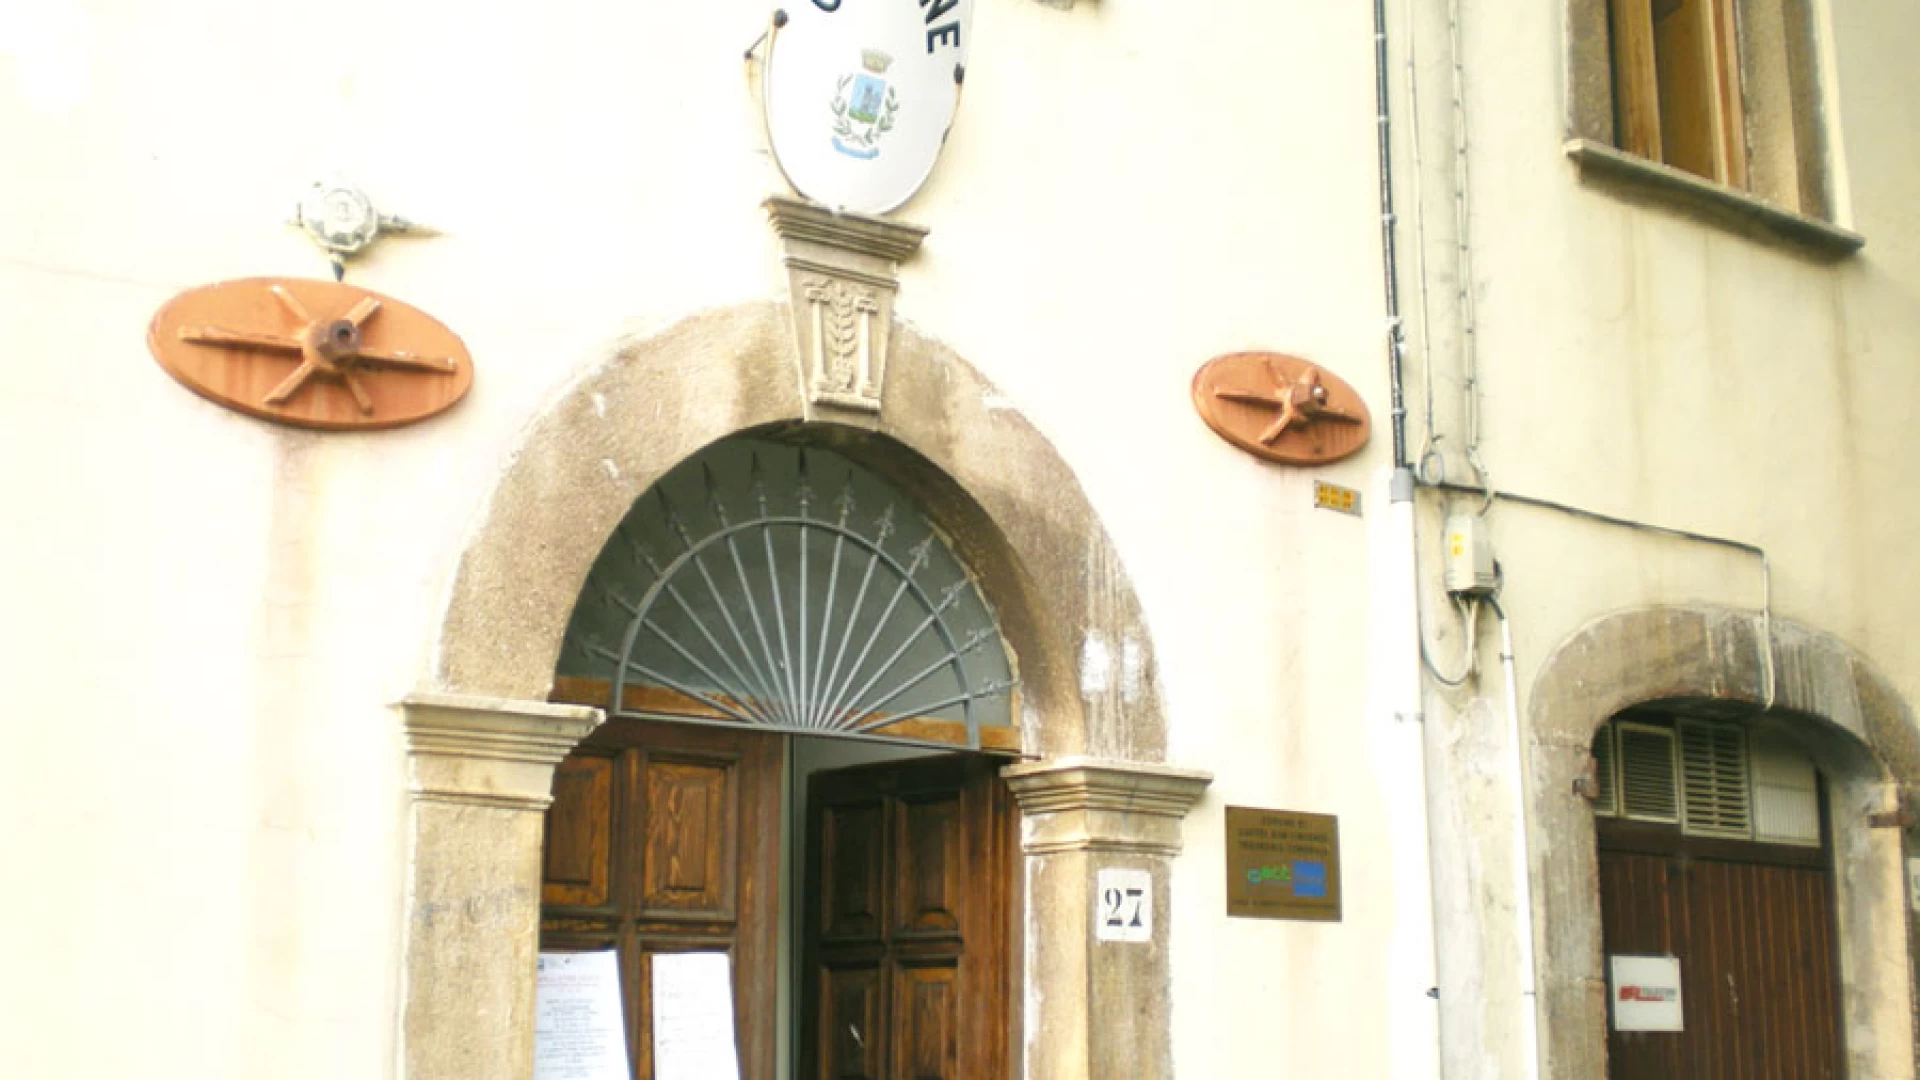 Castel San Vincenzo: gestione dei conti comunali e rendiconto 2014, l’opposizione comunale passa all’ attacco. “La gestione finanziaria del comune non ci convince”.